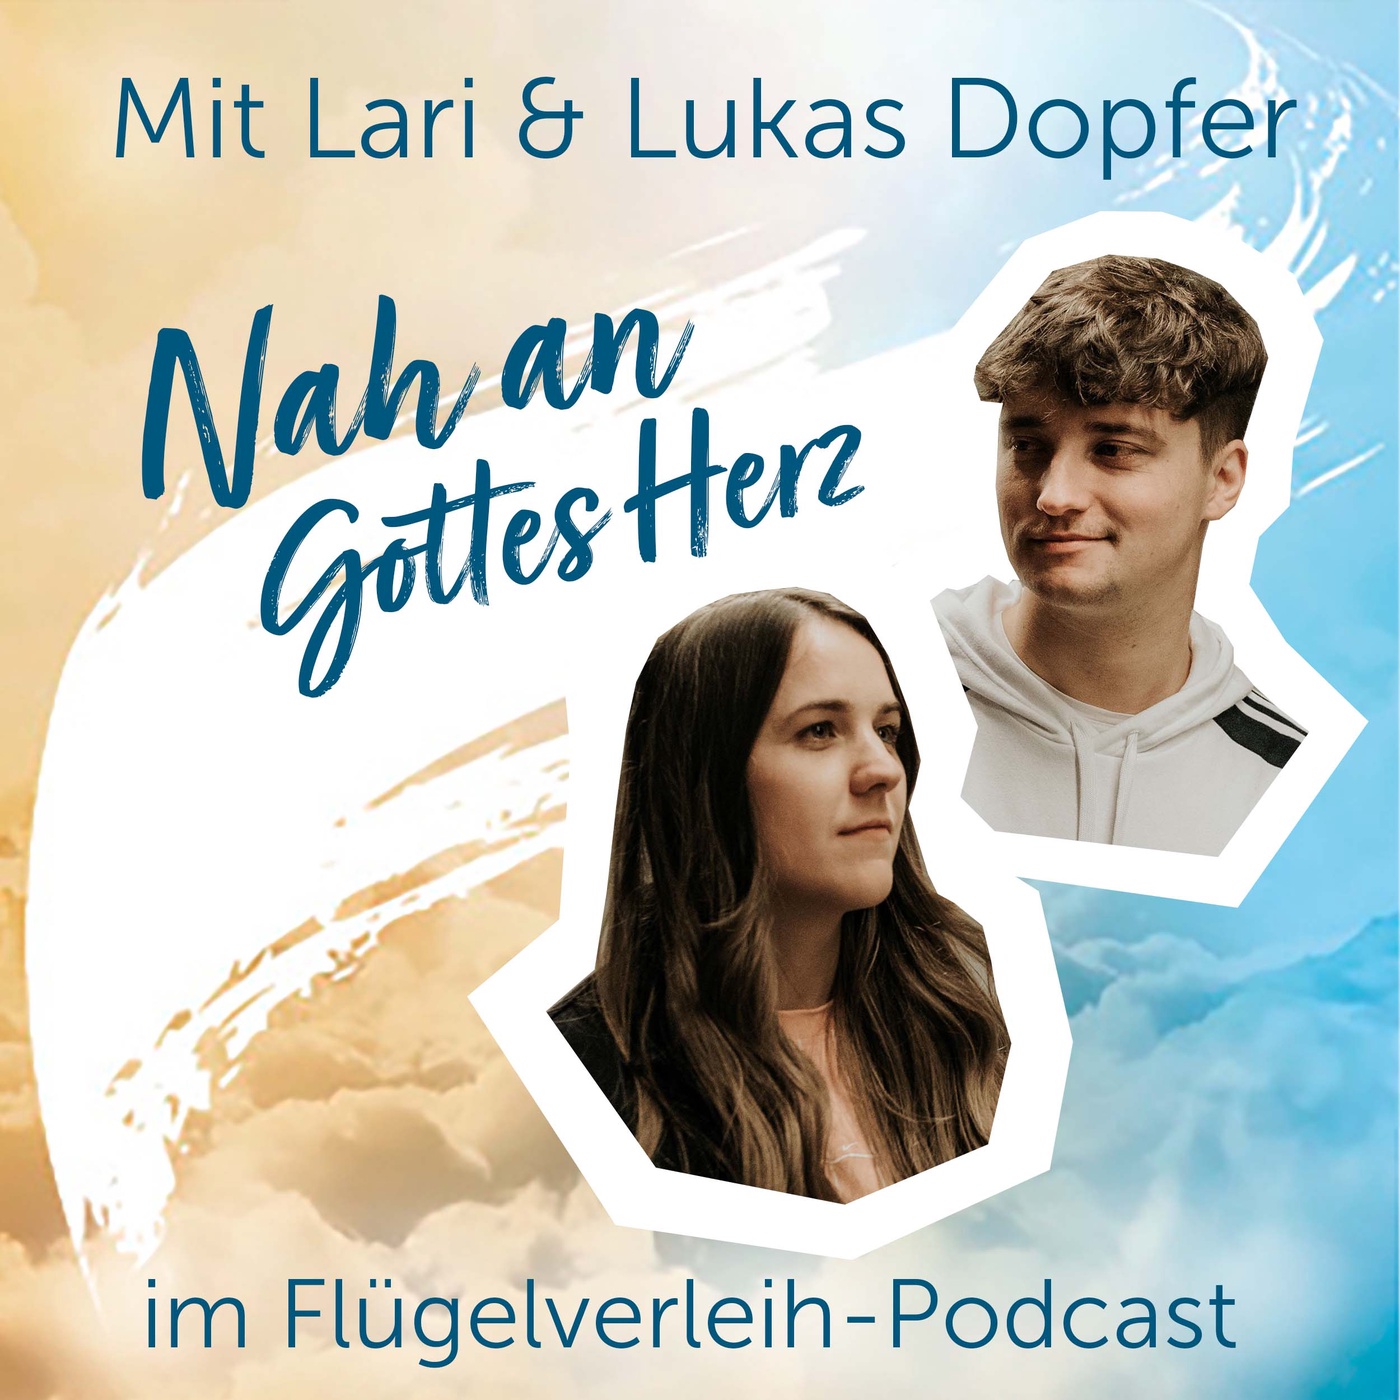 Nah an Gottes Herz – mit Lari & Lukas Dopfer